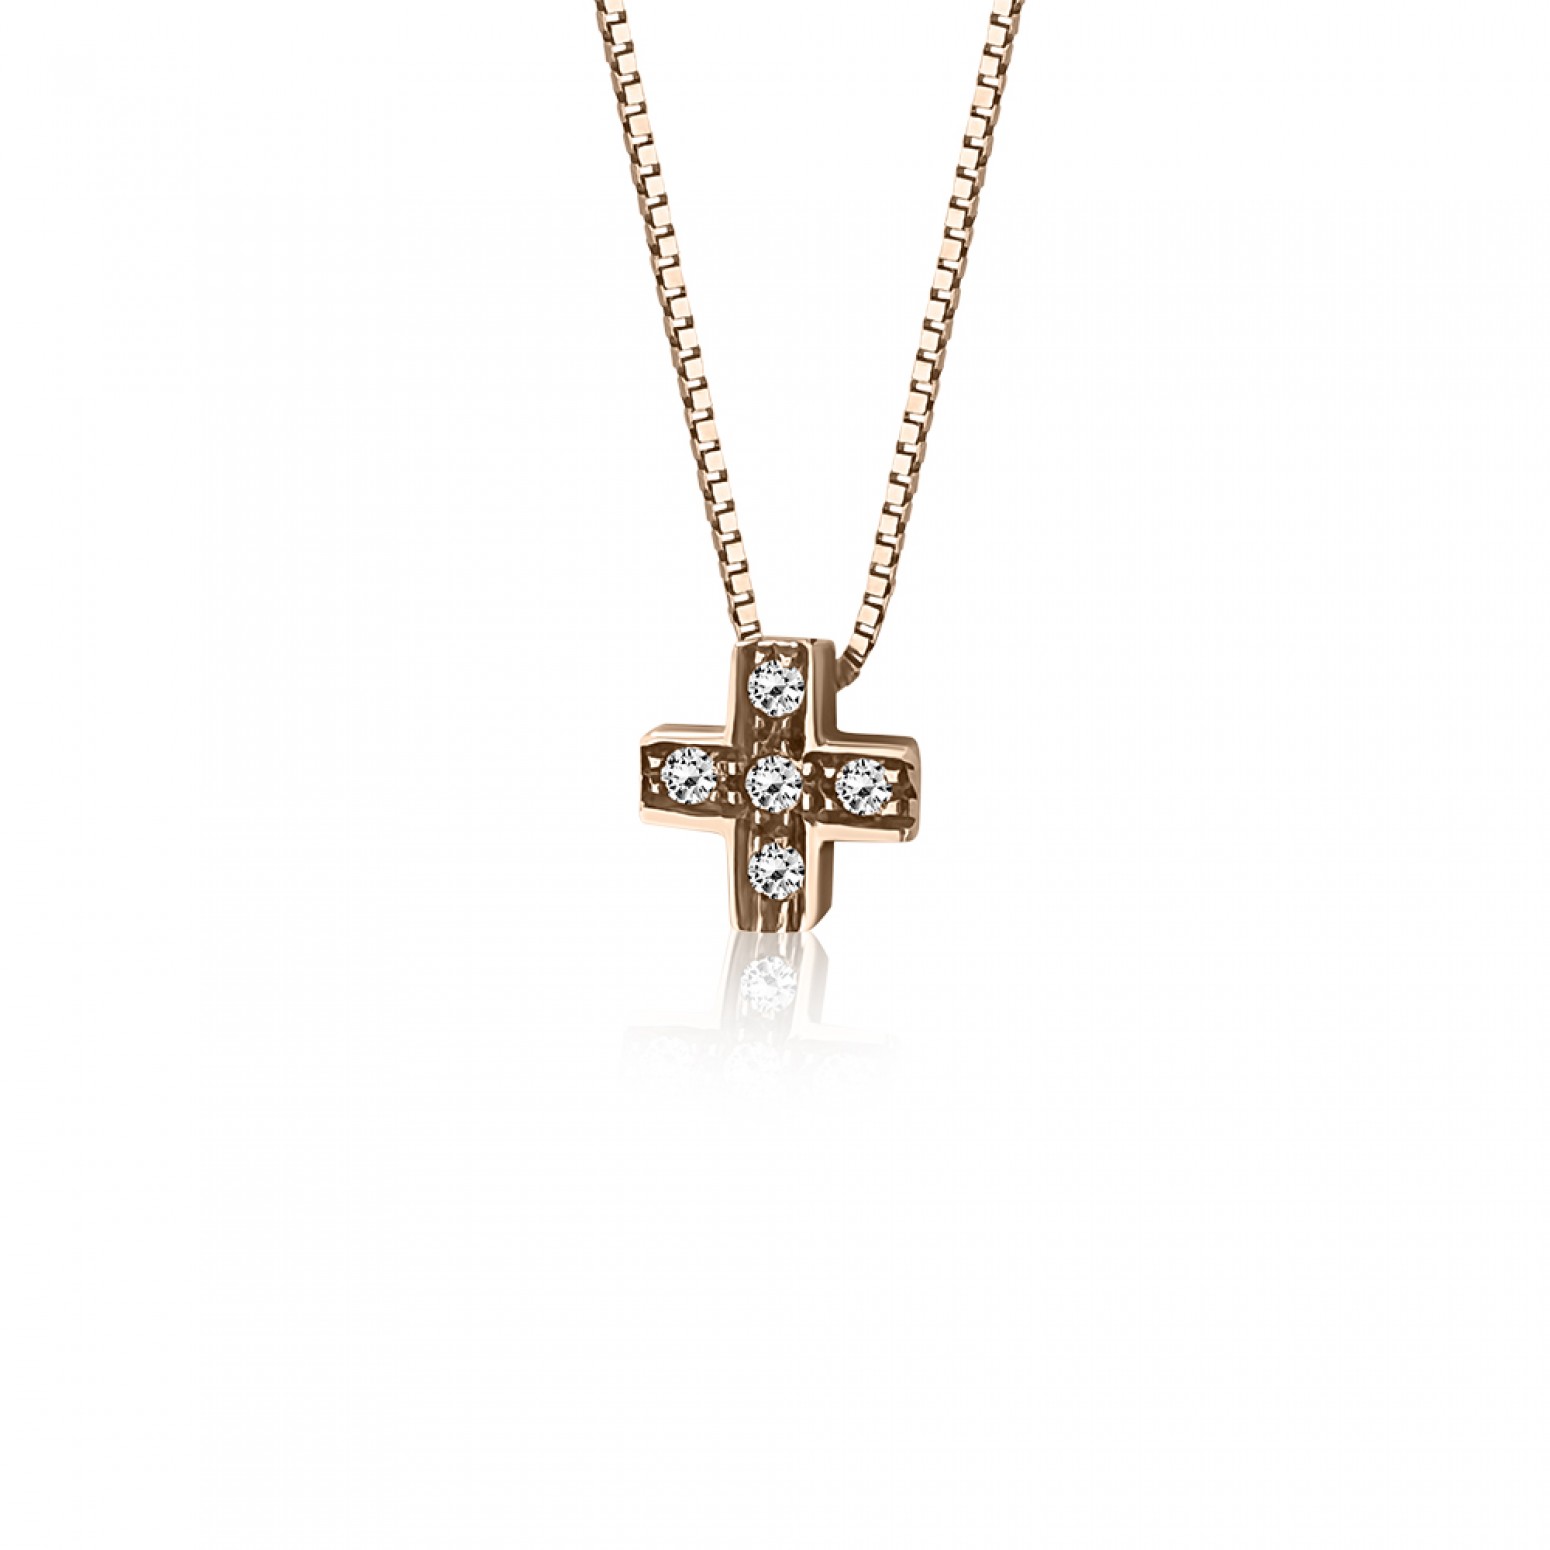 Cross necklace, Κ14 gold with zircon, ko1274 NECKLACES Κοσμηματα - chrilia.gr